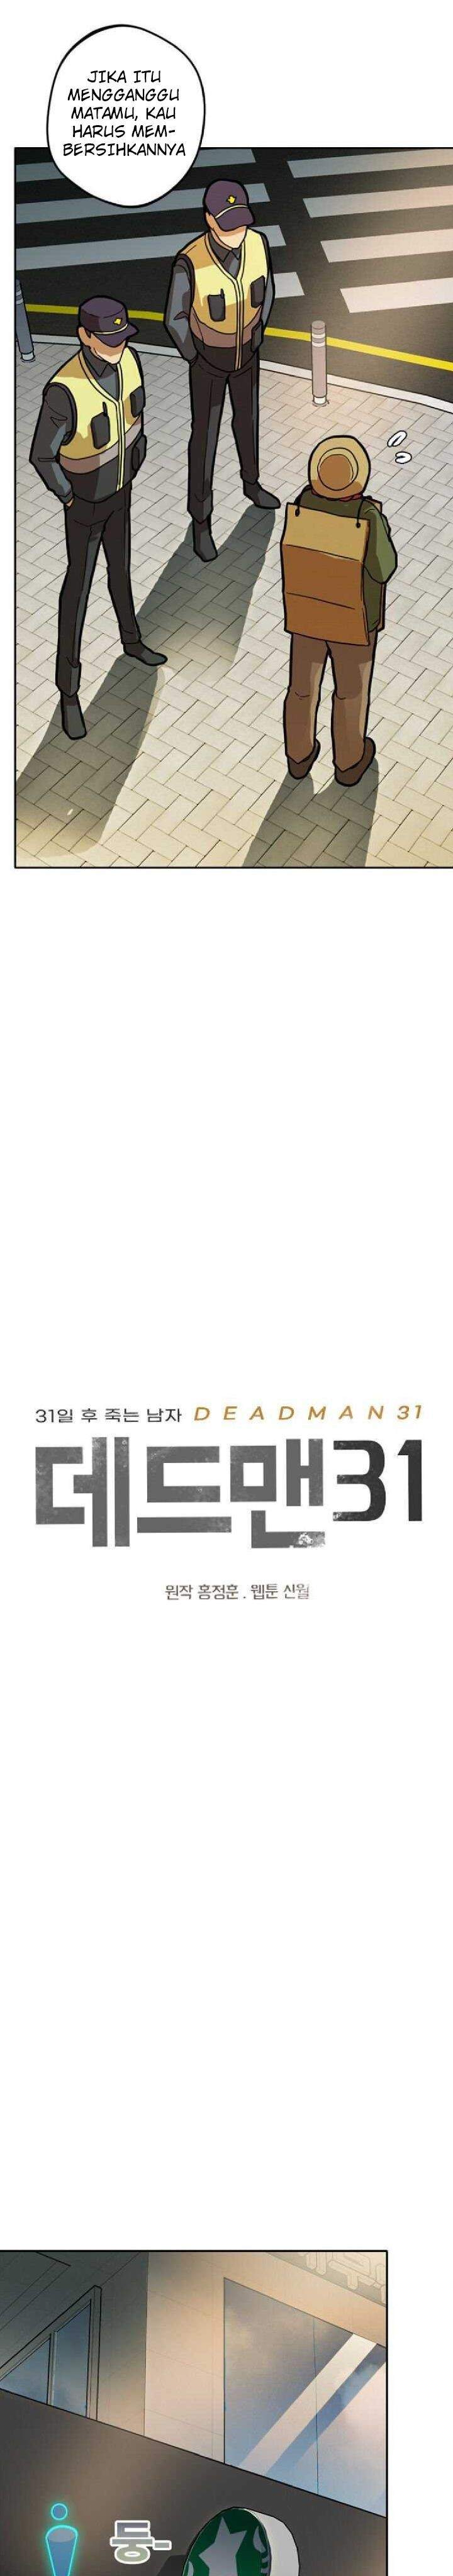 Deadman 31 Chapter 2